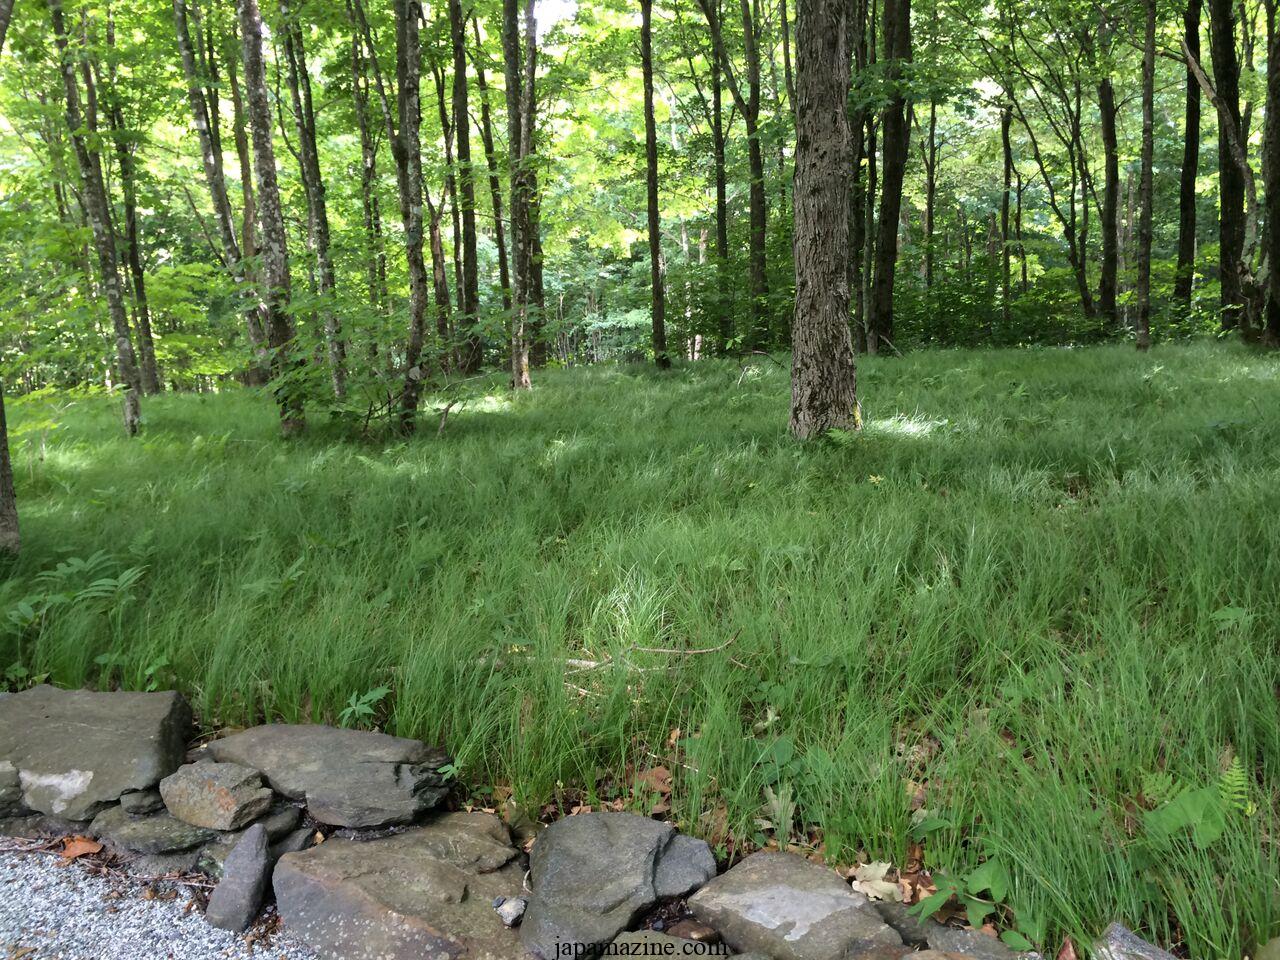 Growing Pennsylvania sedge (Carex pensylvanica) in a garden or as a lawn alternative 3